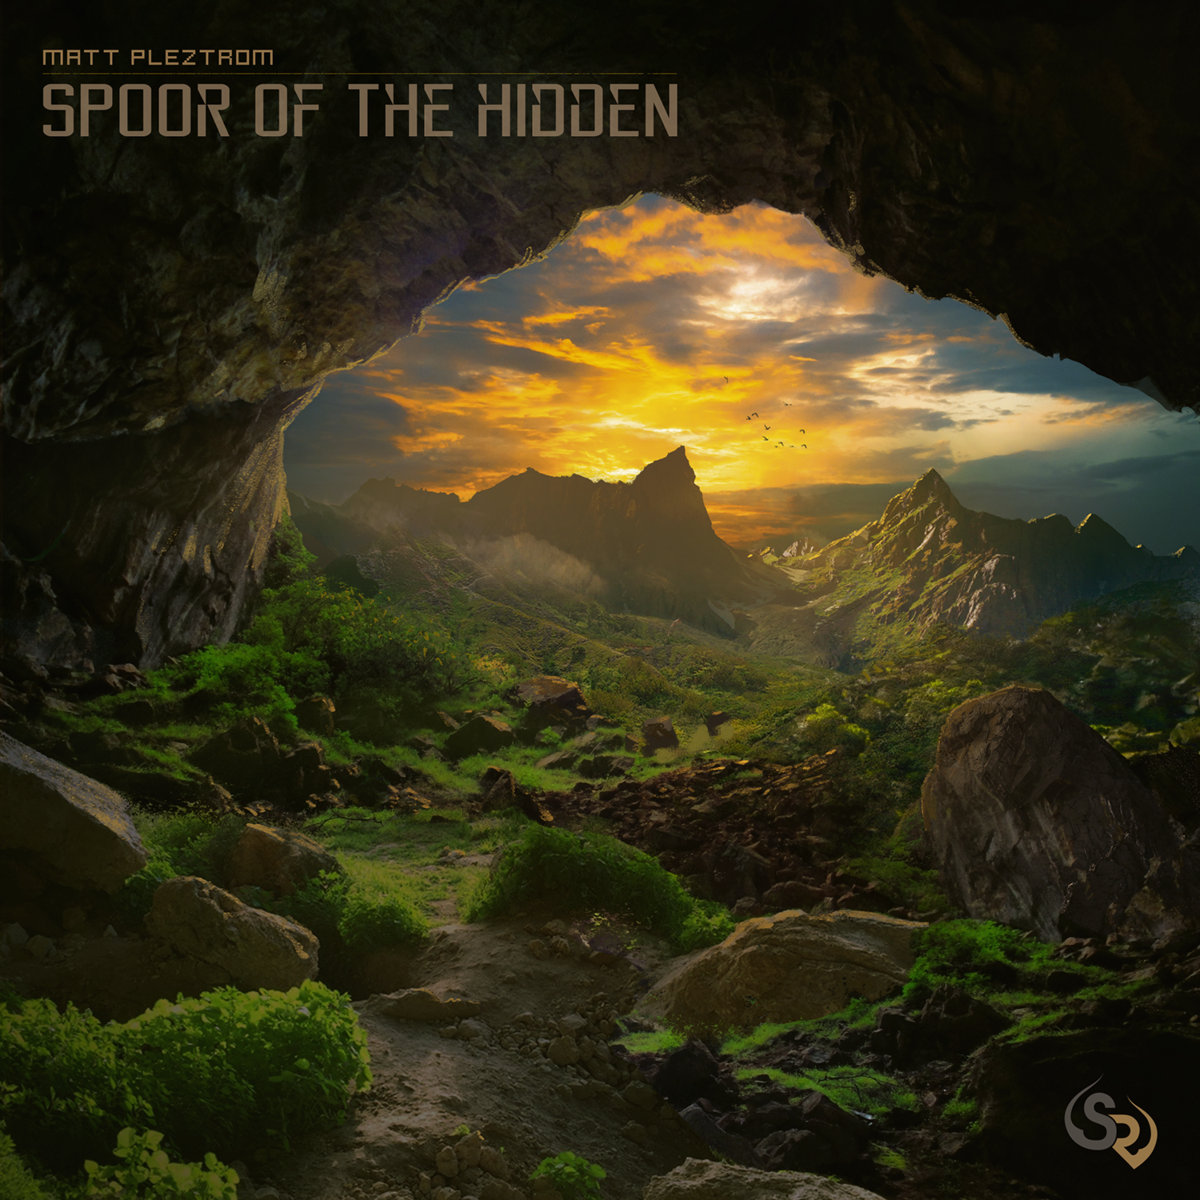 Matt Pleztrom - Basement Home @ 'Spoor Of The Hidden' album (bass, electronic)